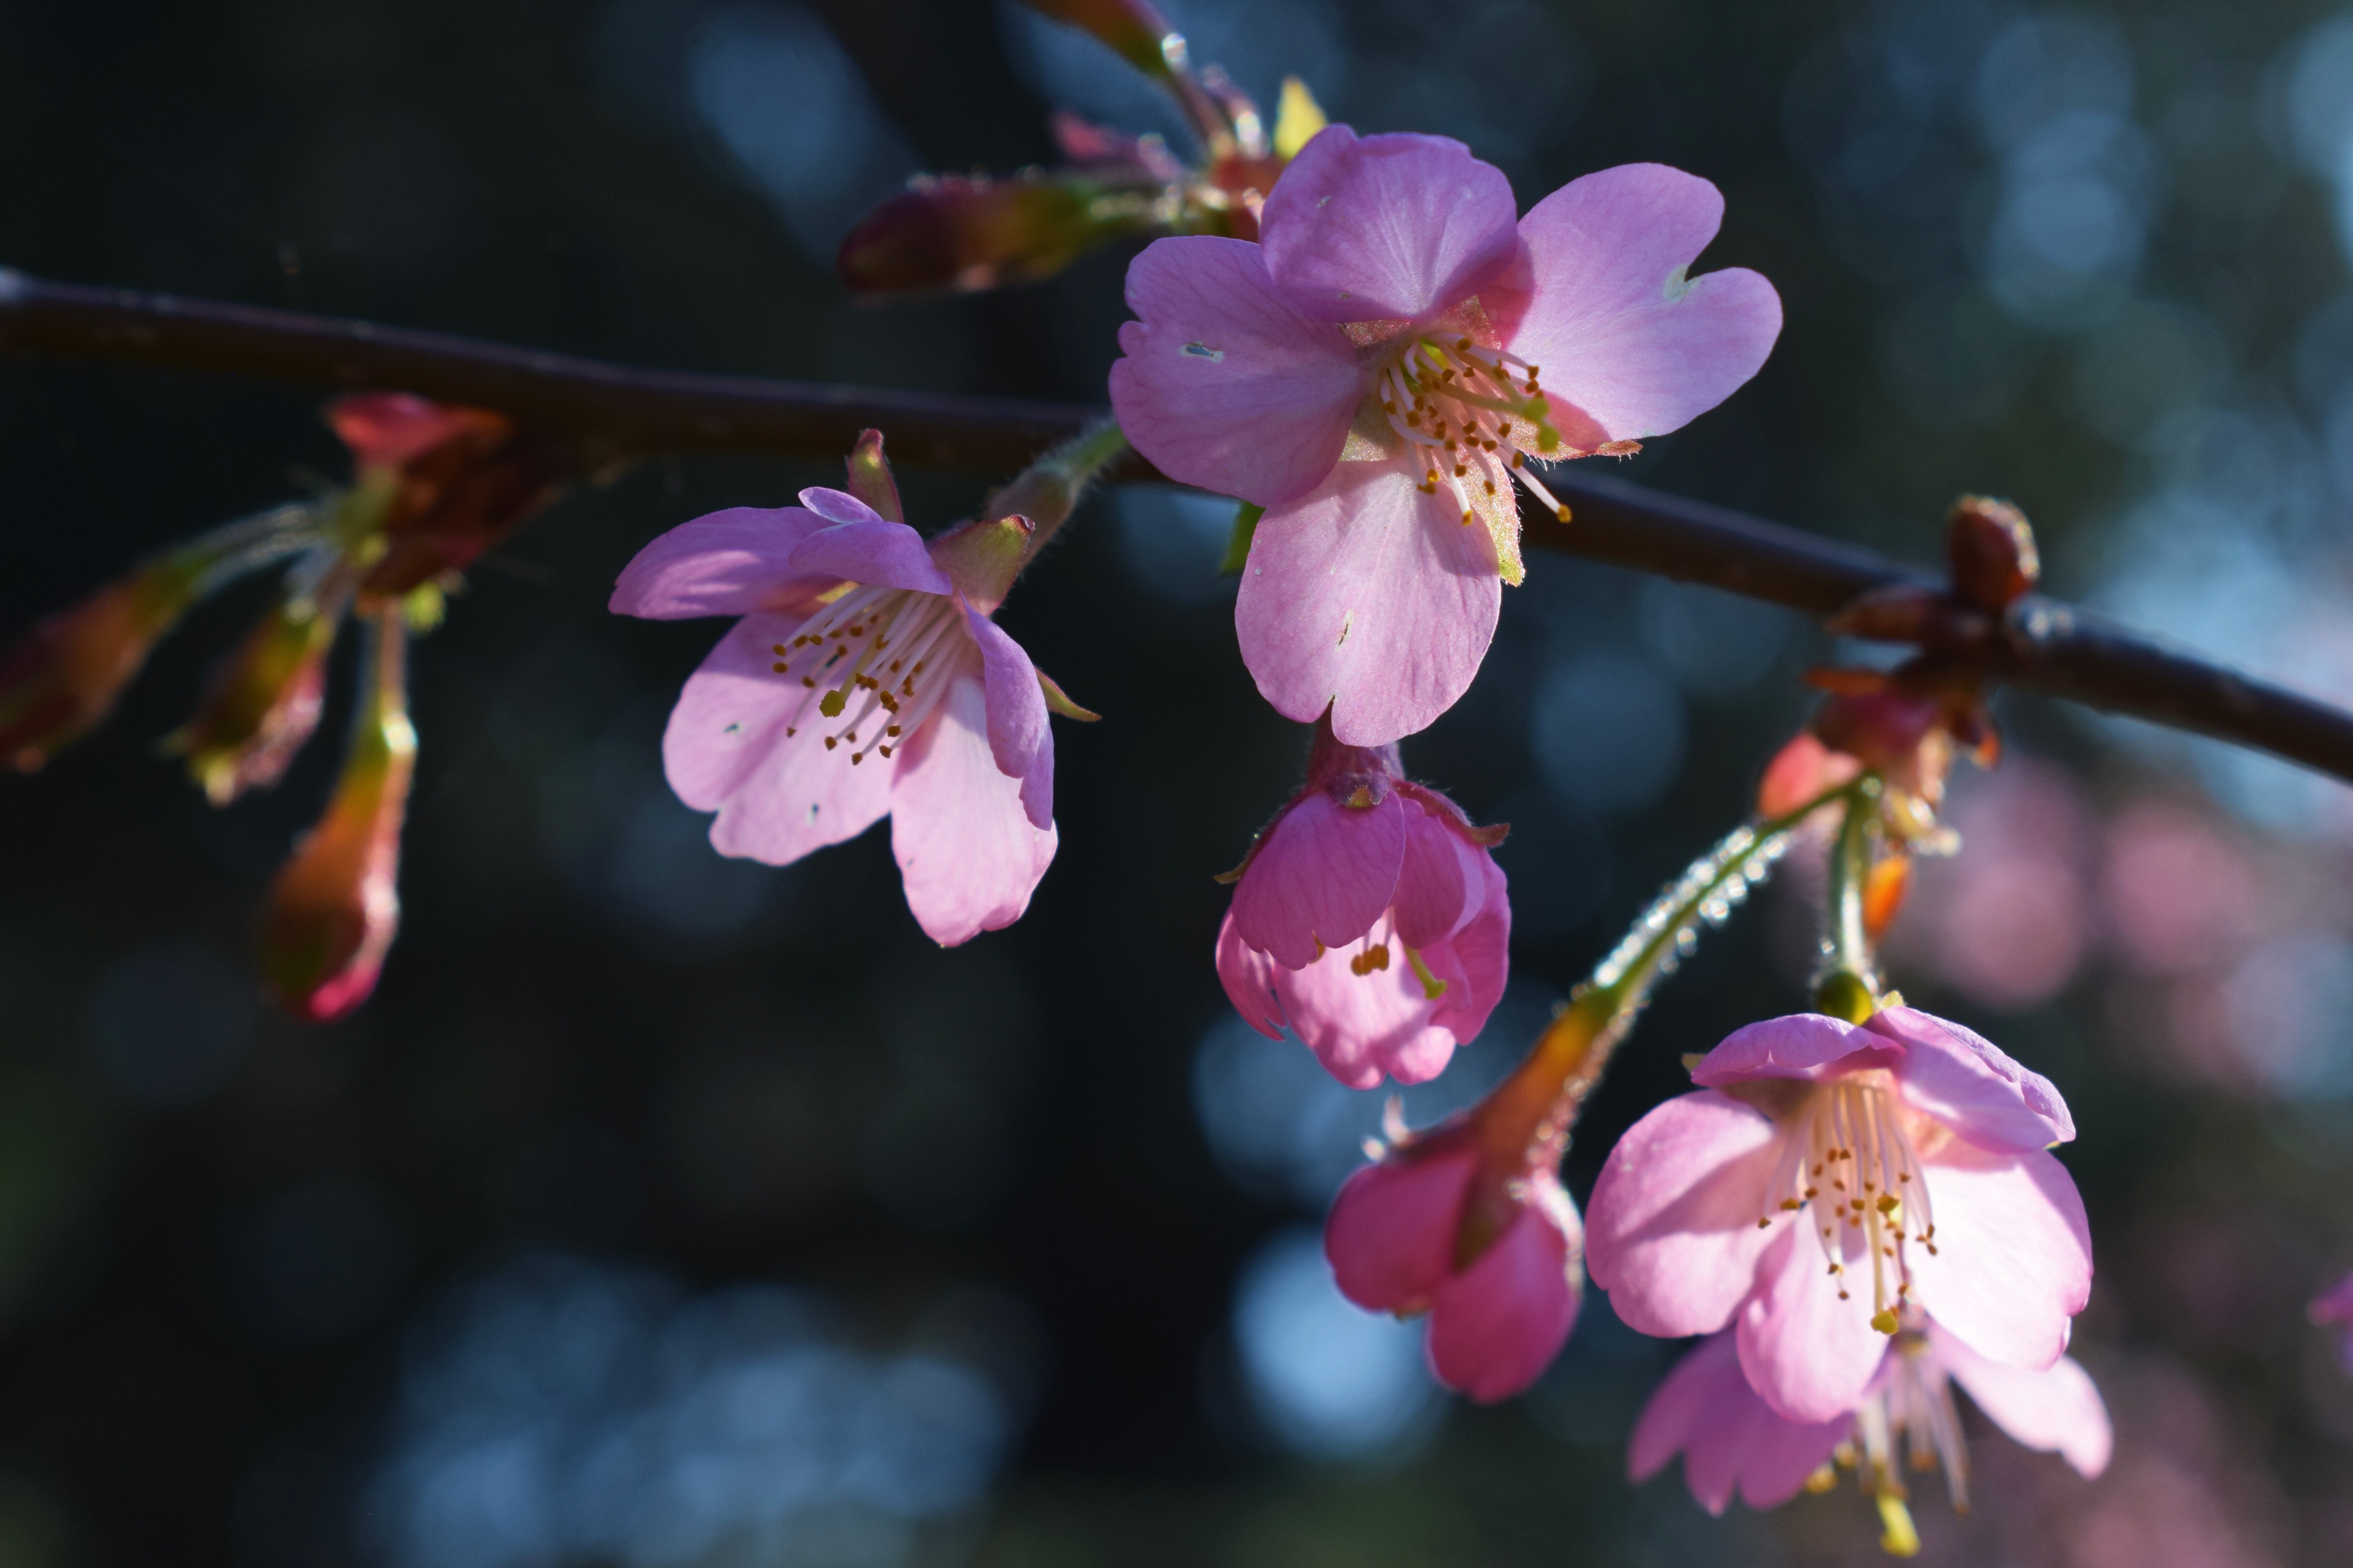 Blossoms at Kew